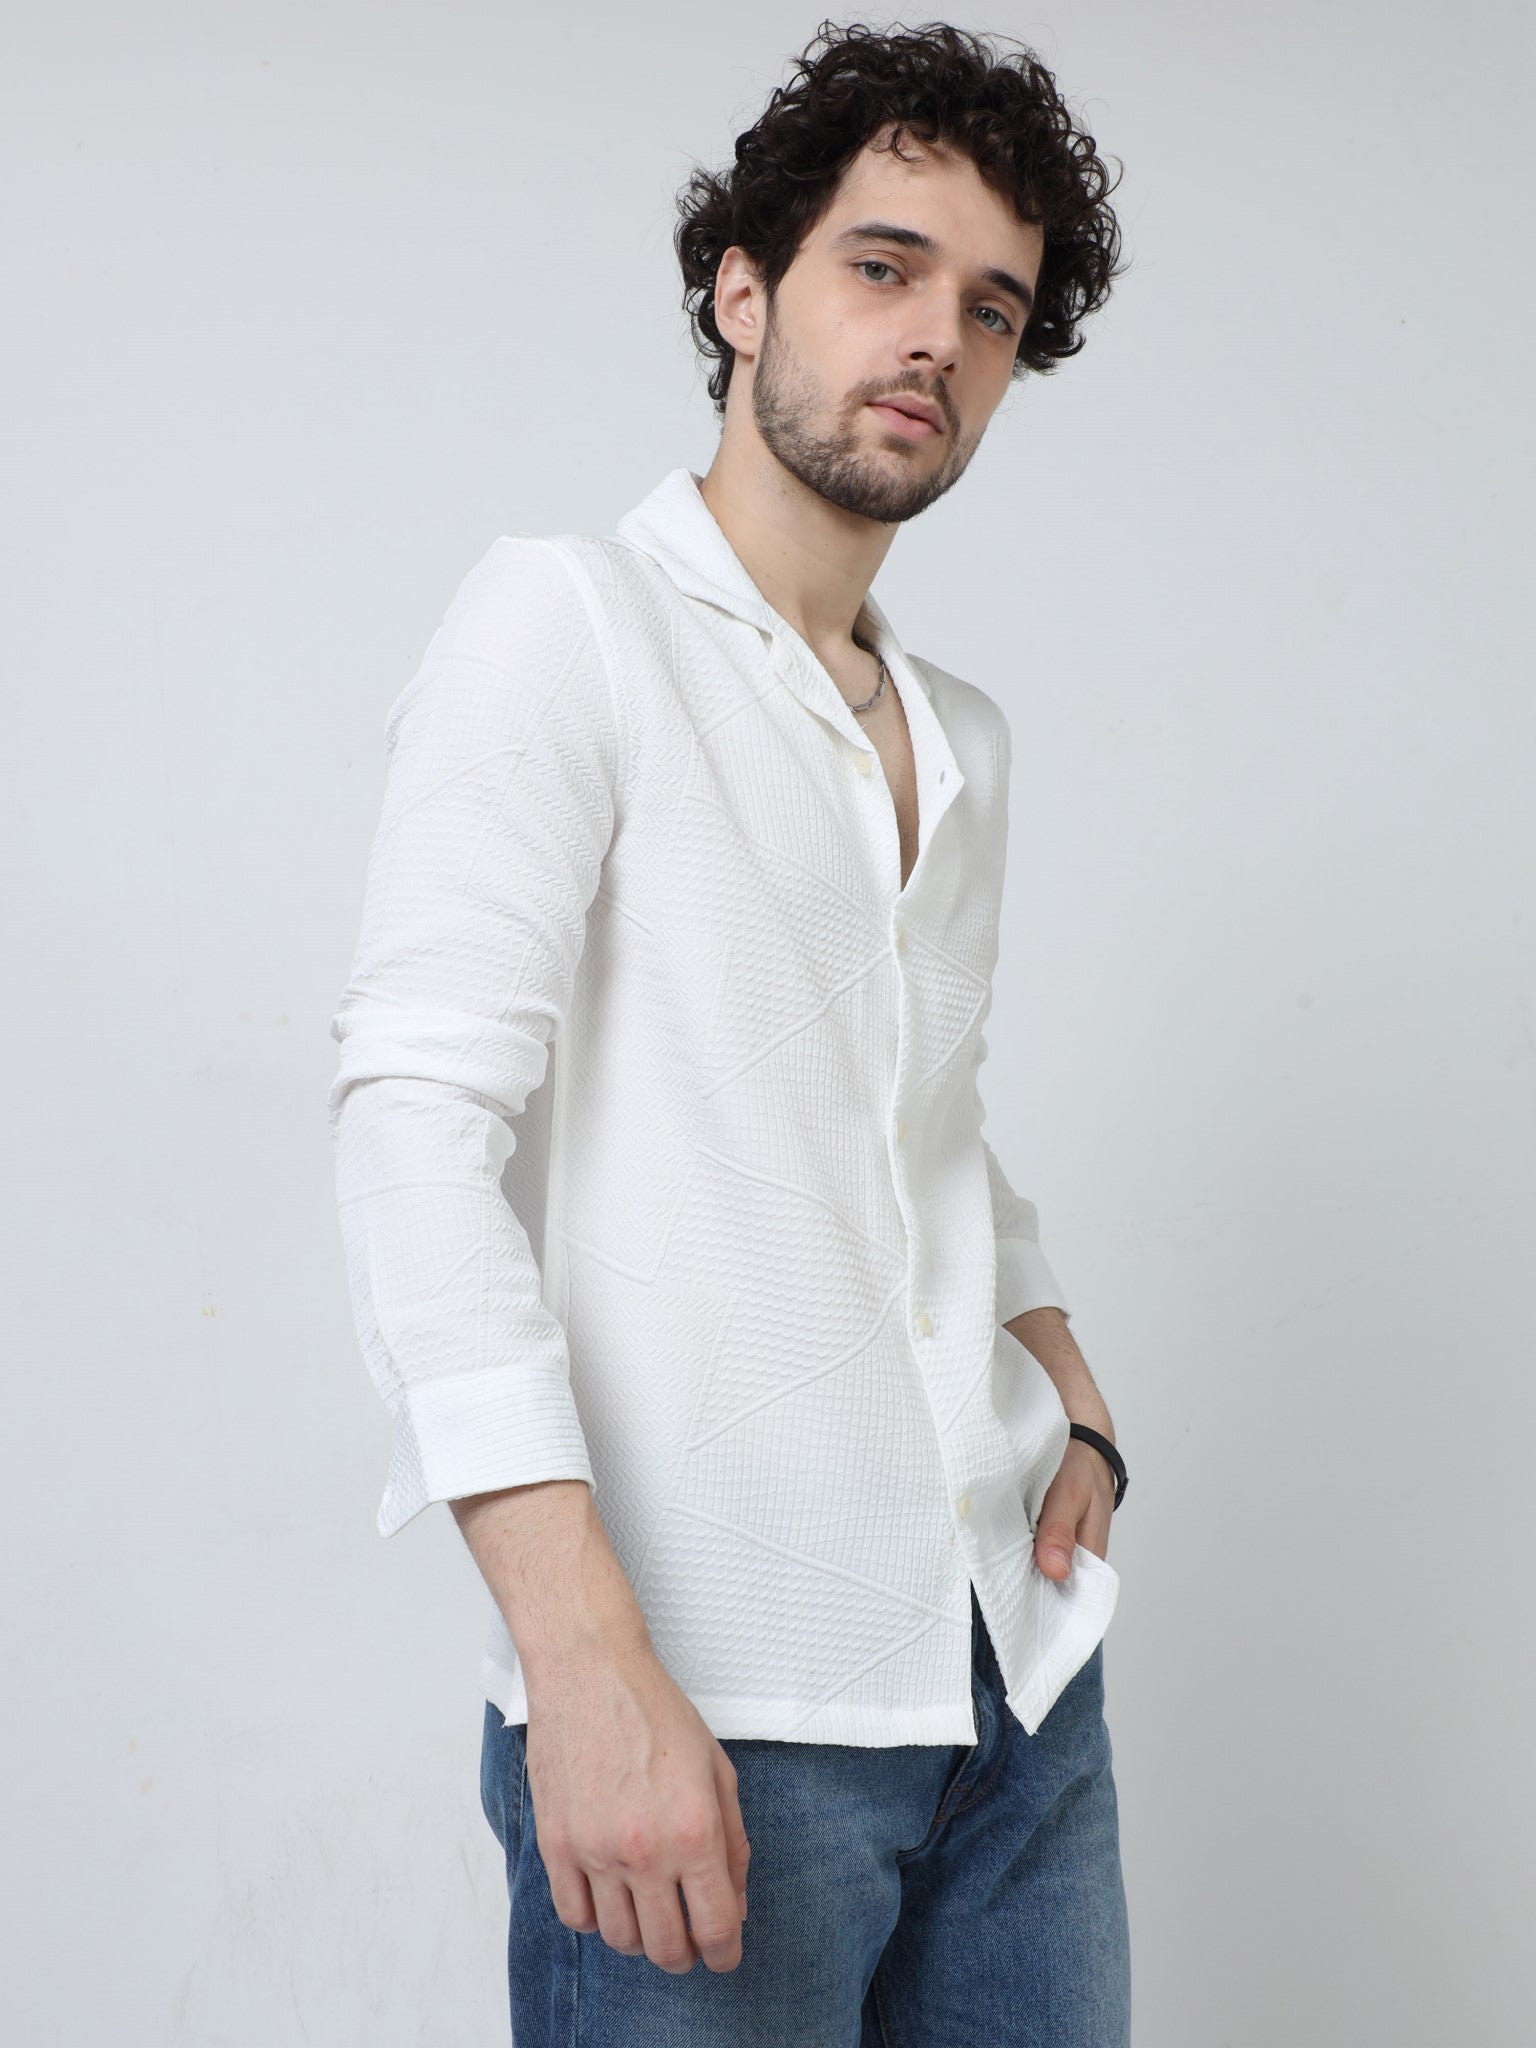 Zig Zag Jacquard White Shirt for Men